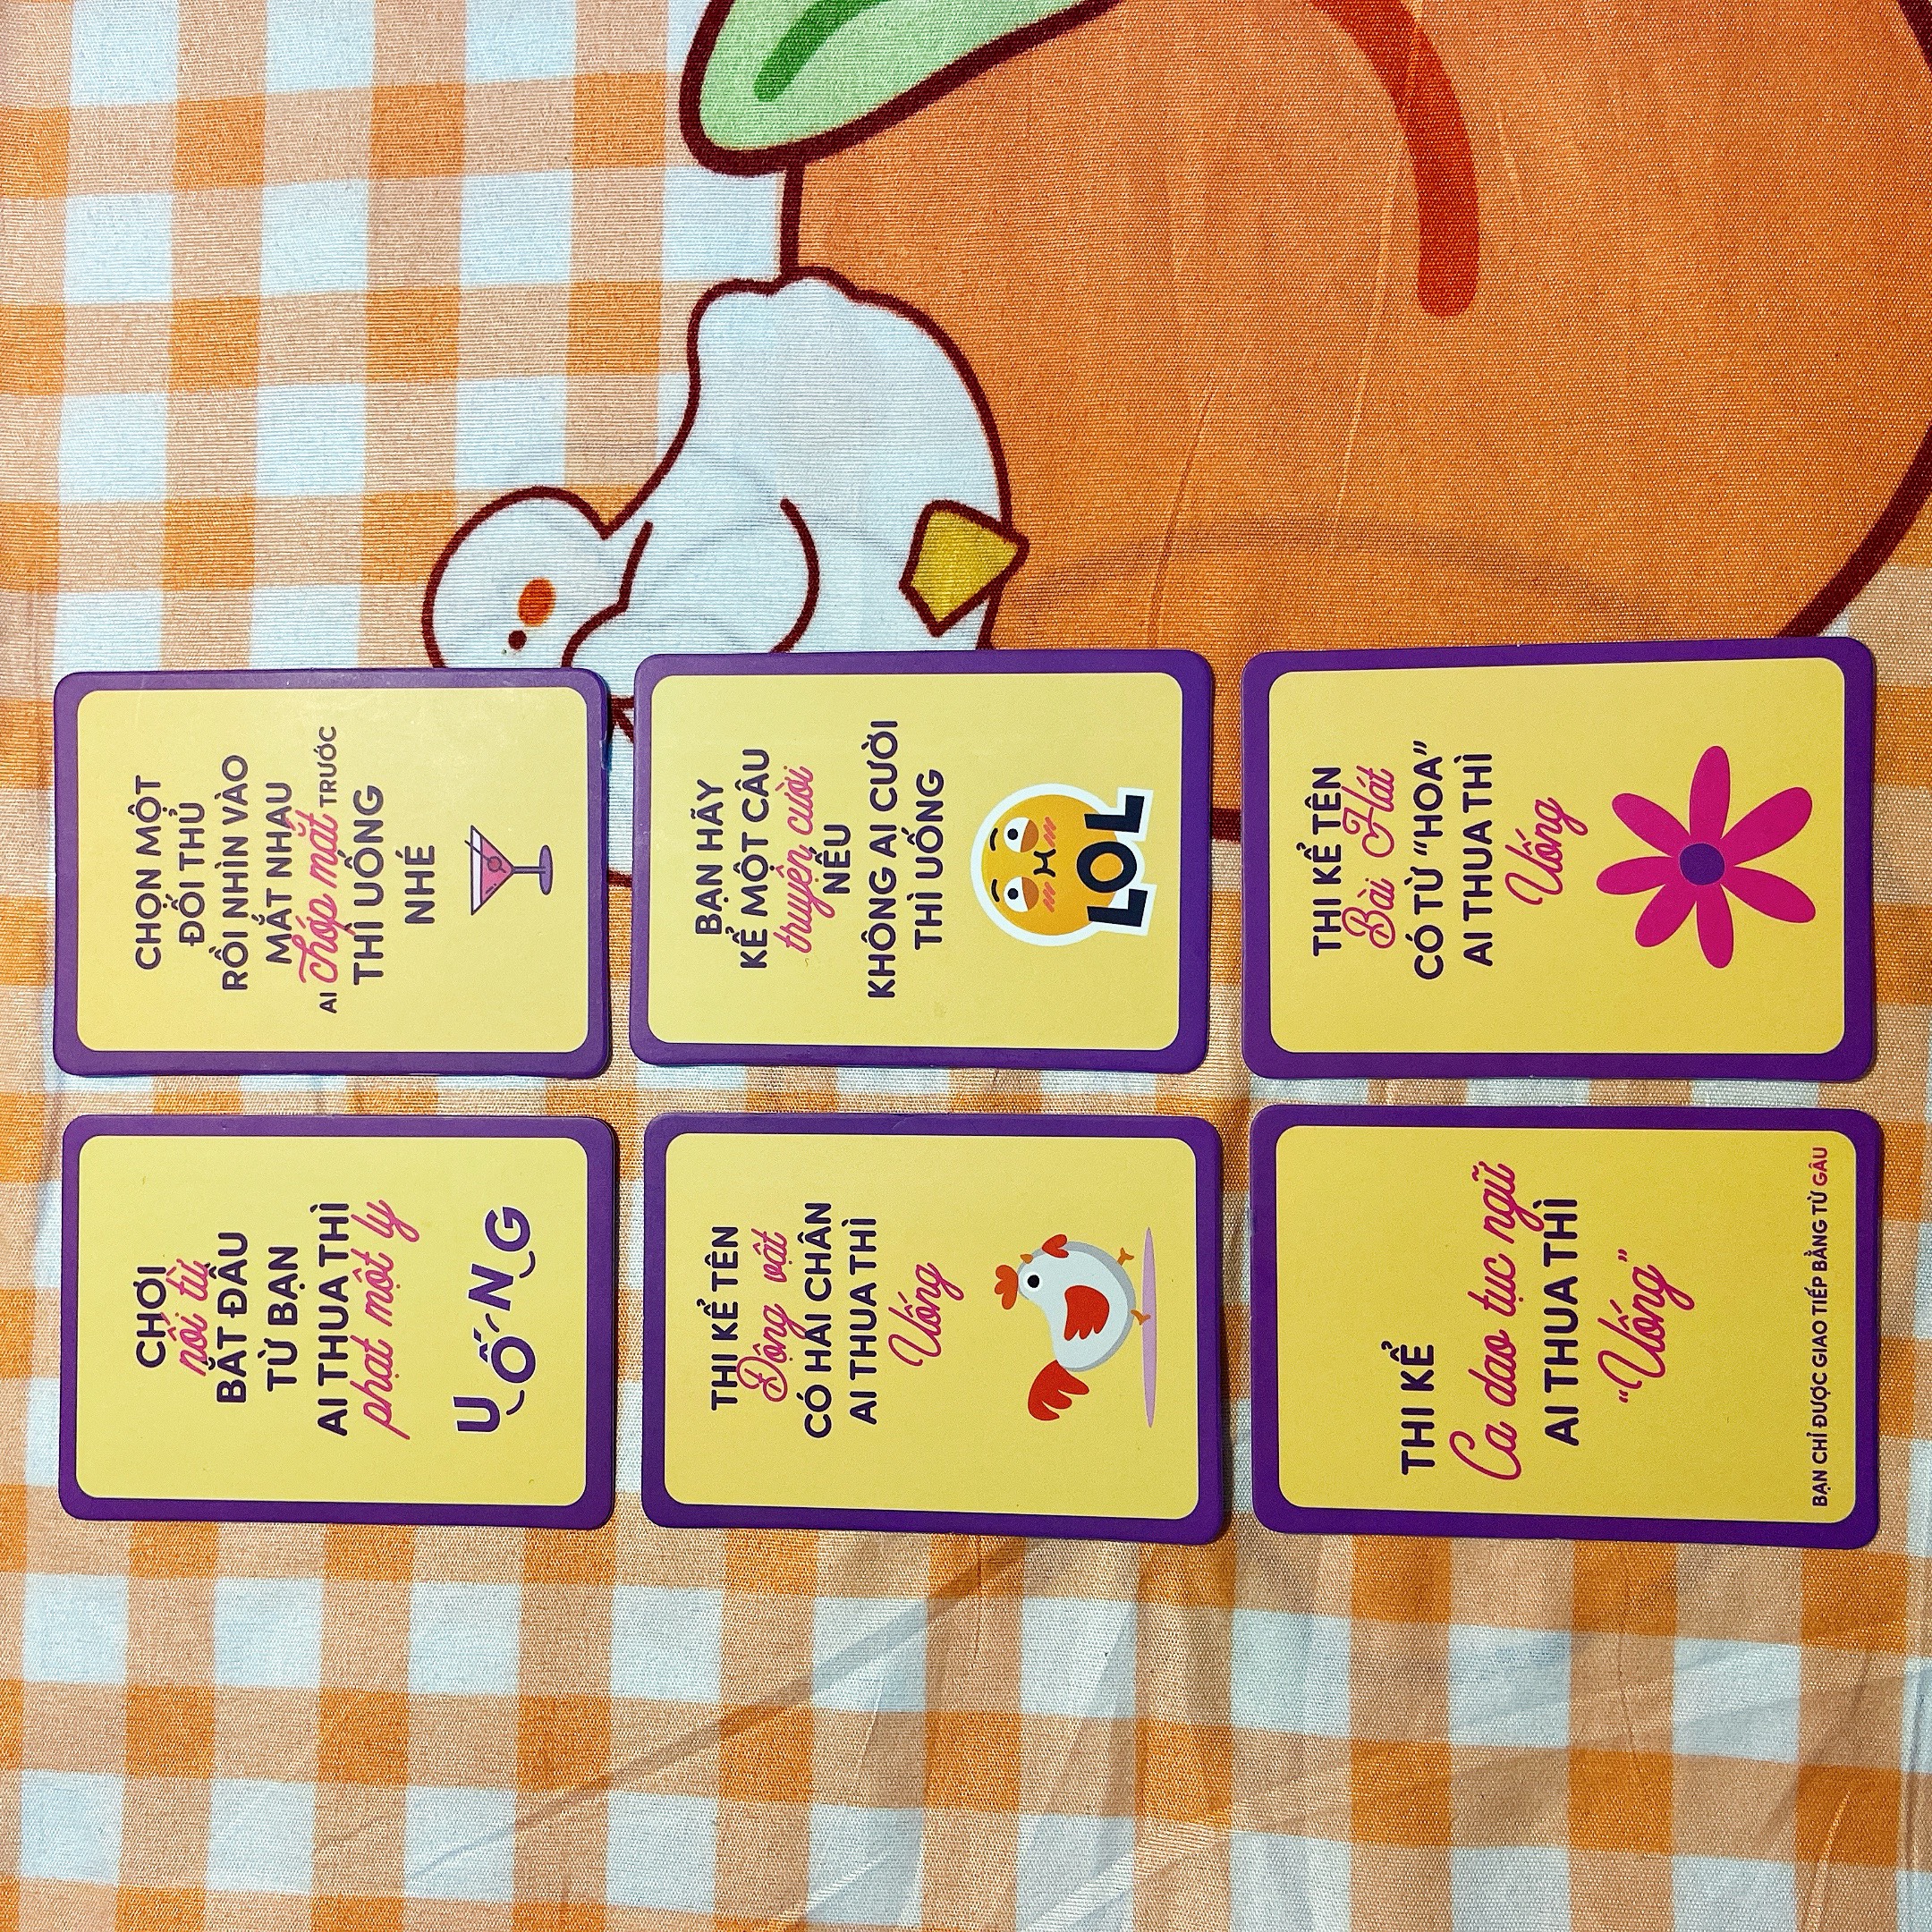 Bộ bài Drinking game huệ nốc out tổng hợp 83 lá bài cho cặp đôi nhóm bùng nổ cuộc vui